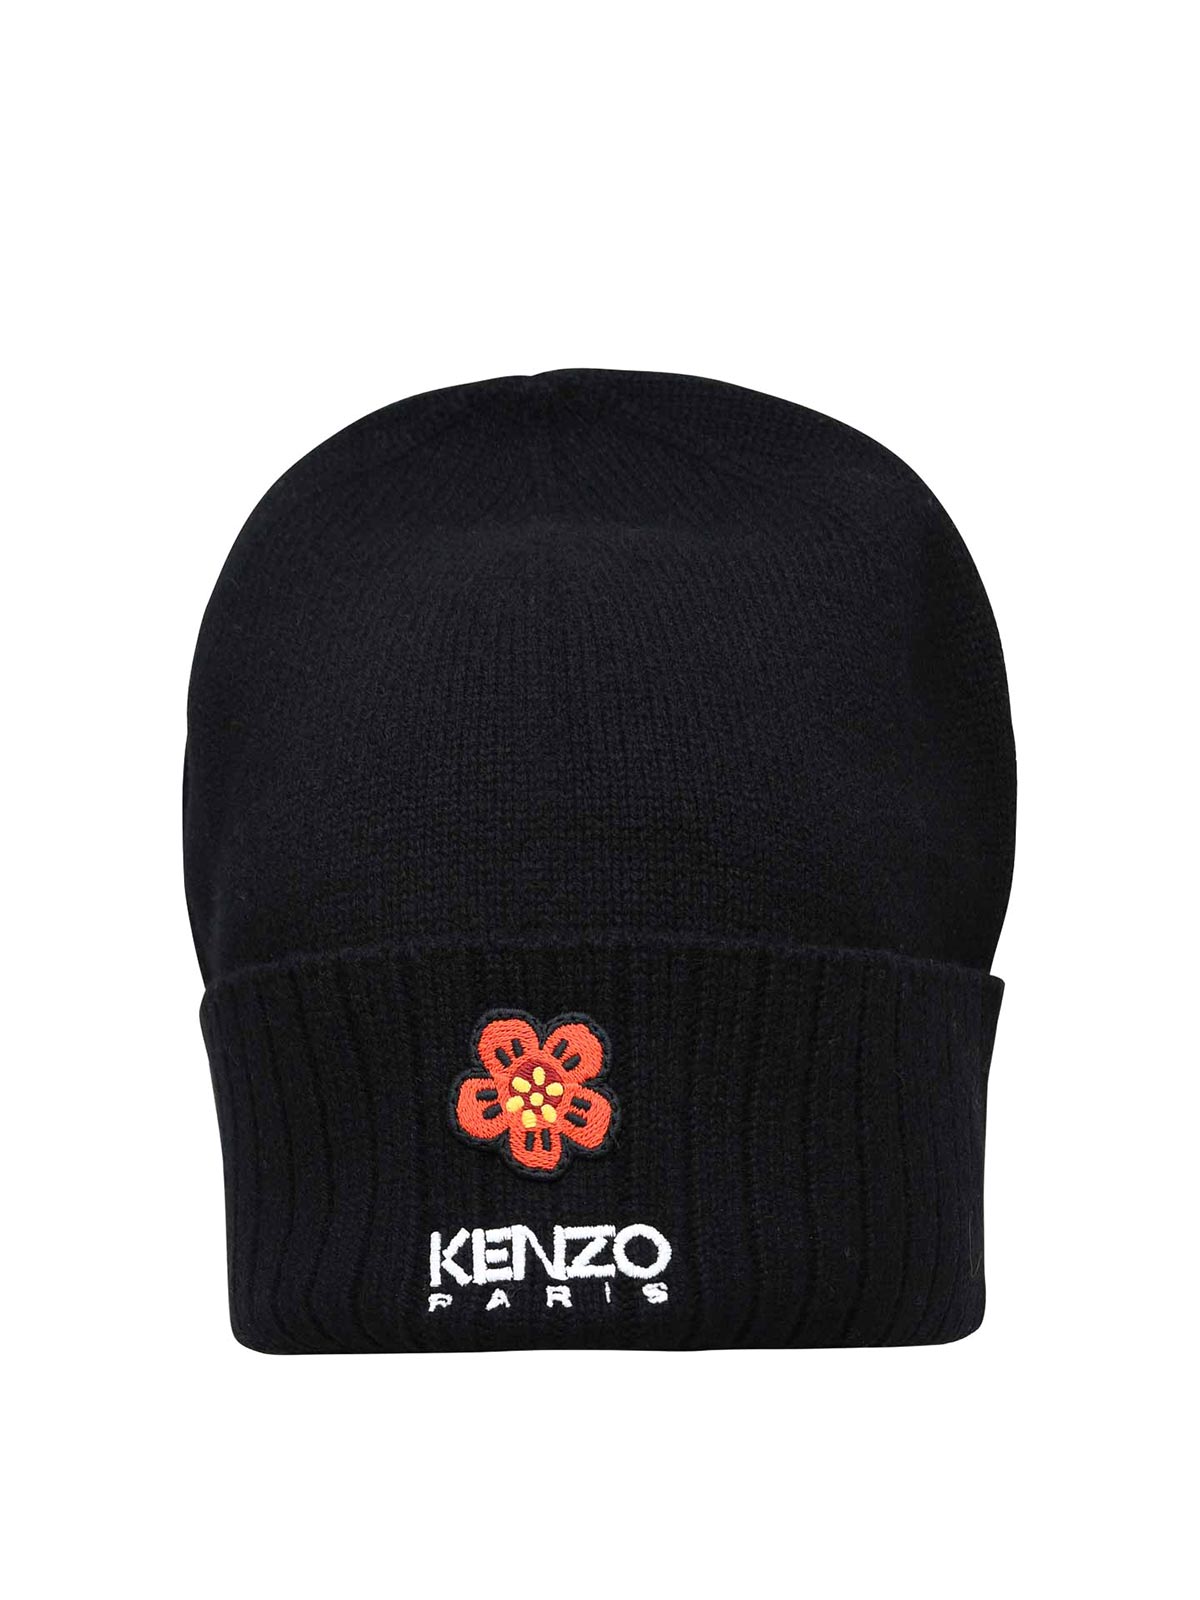 Kenzo Written Logo Cap In Black